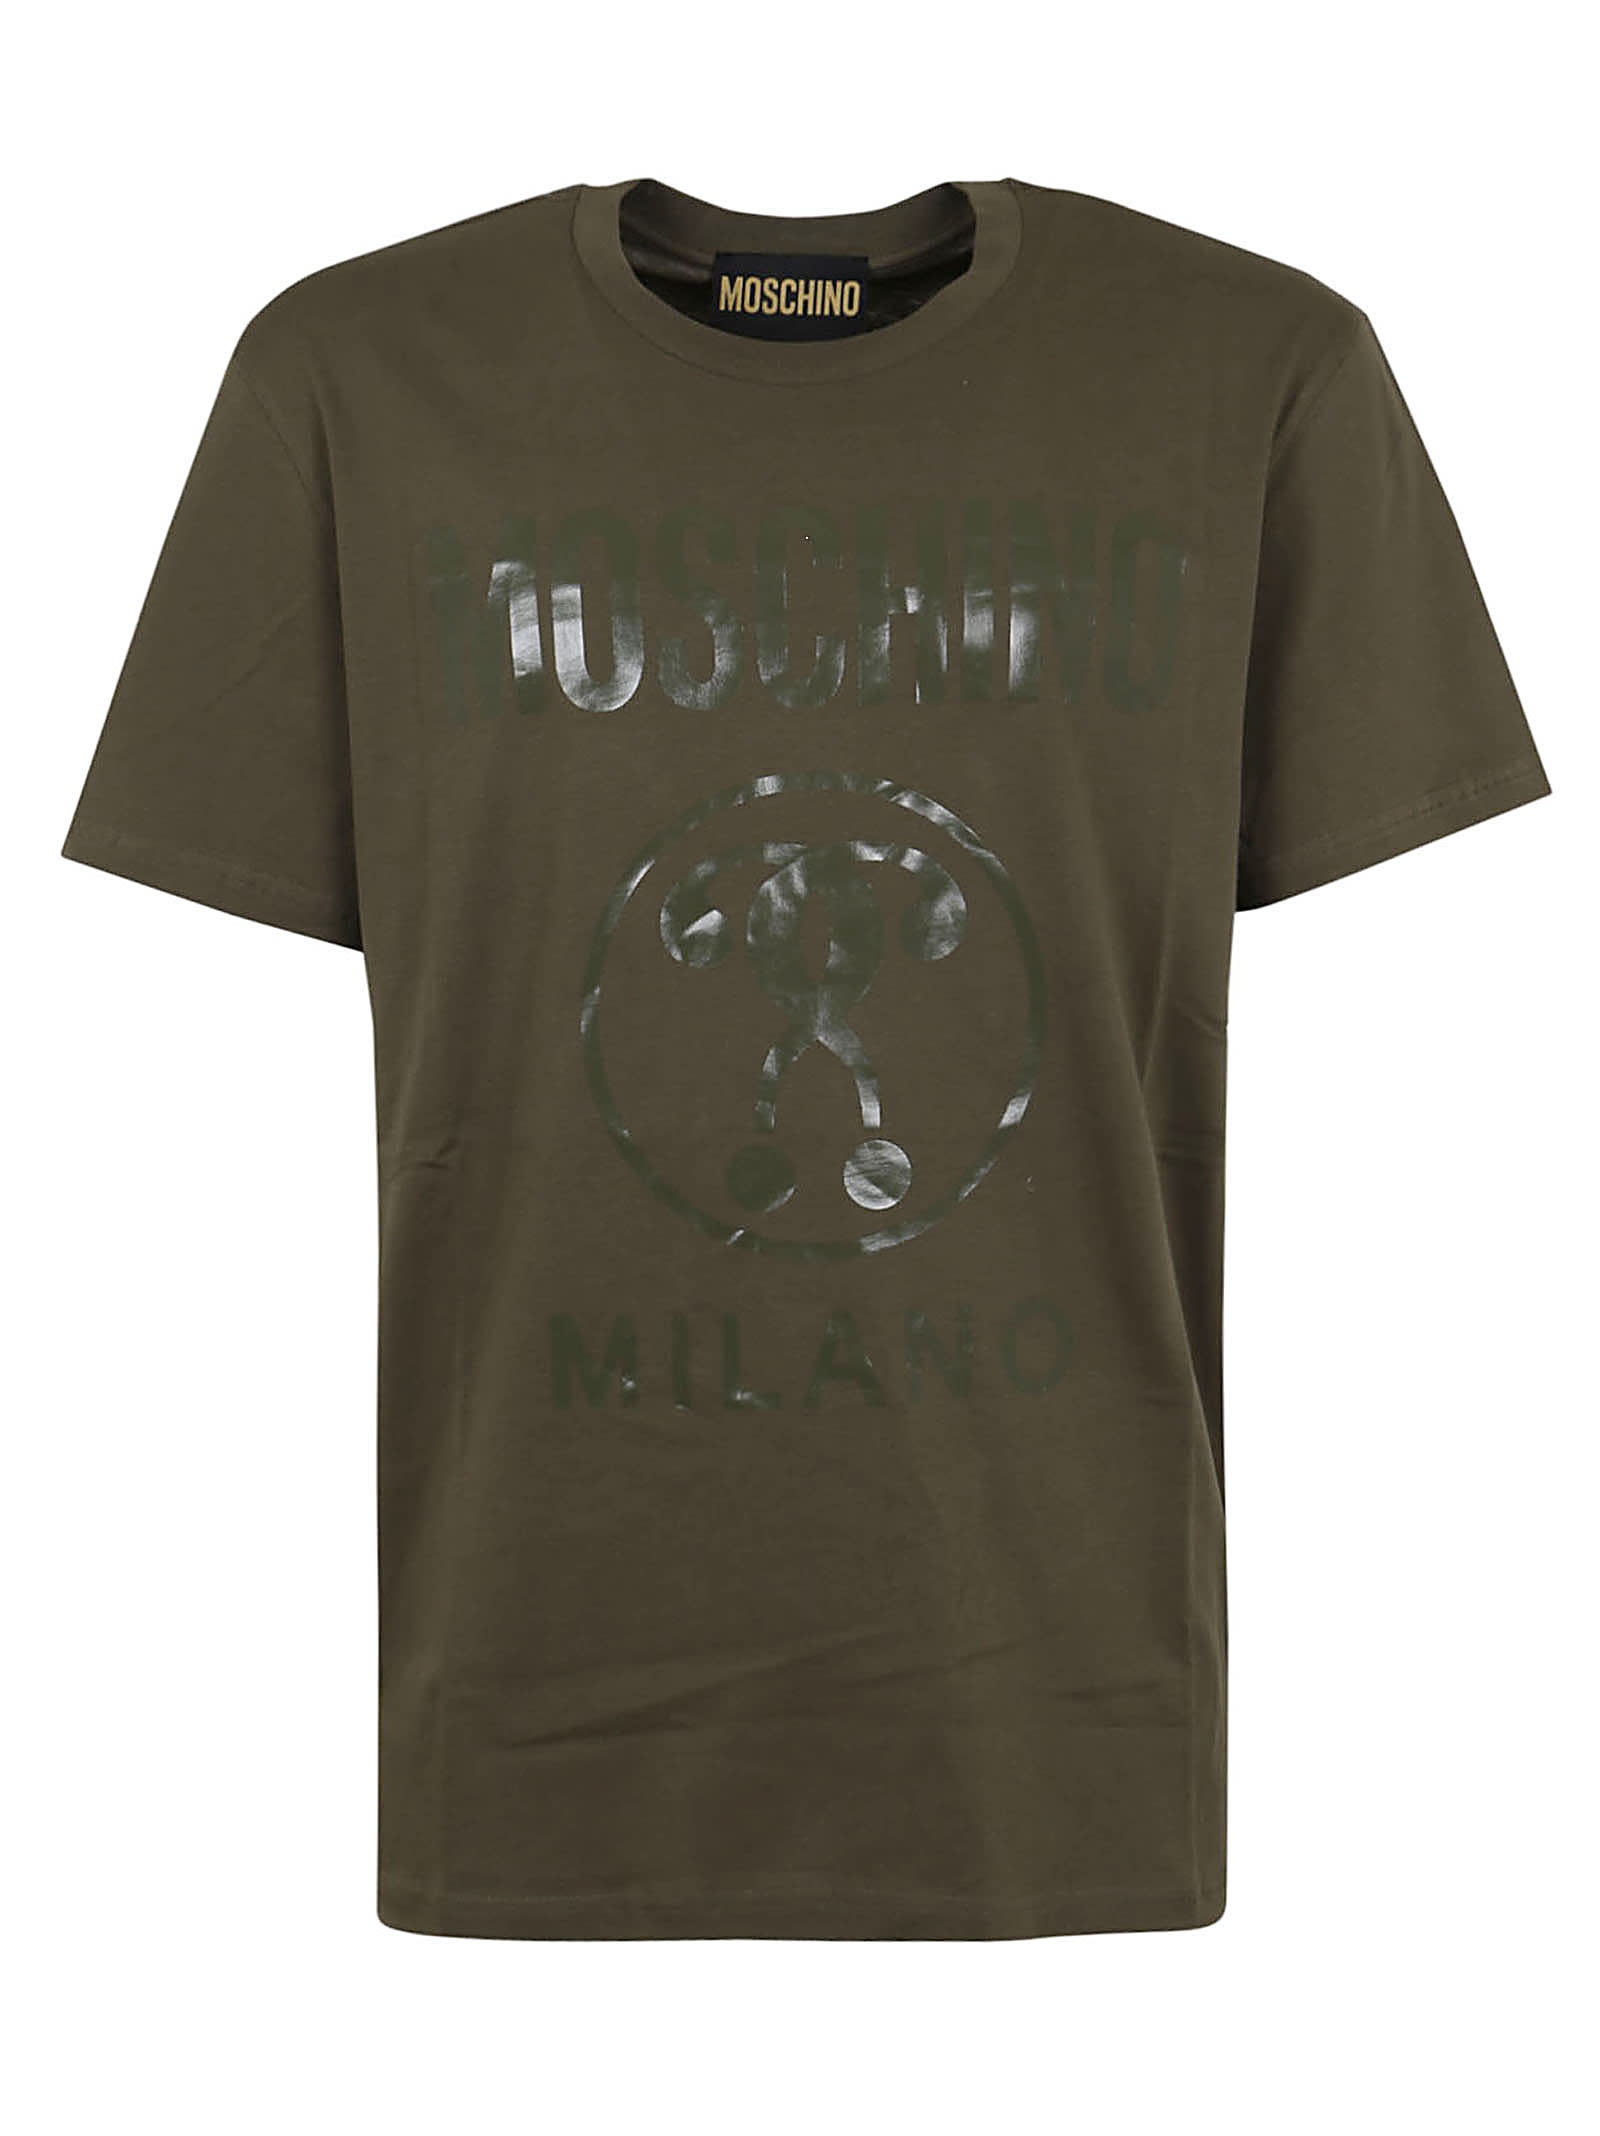 Moschino Institutional T-shirt